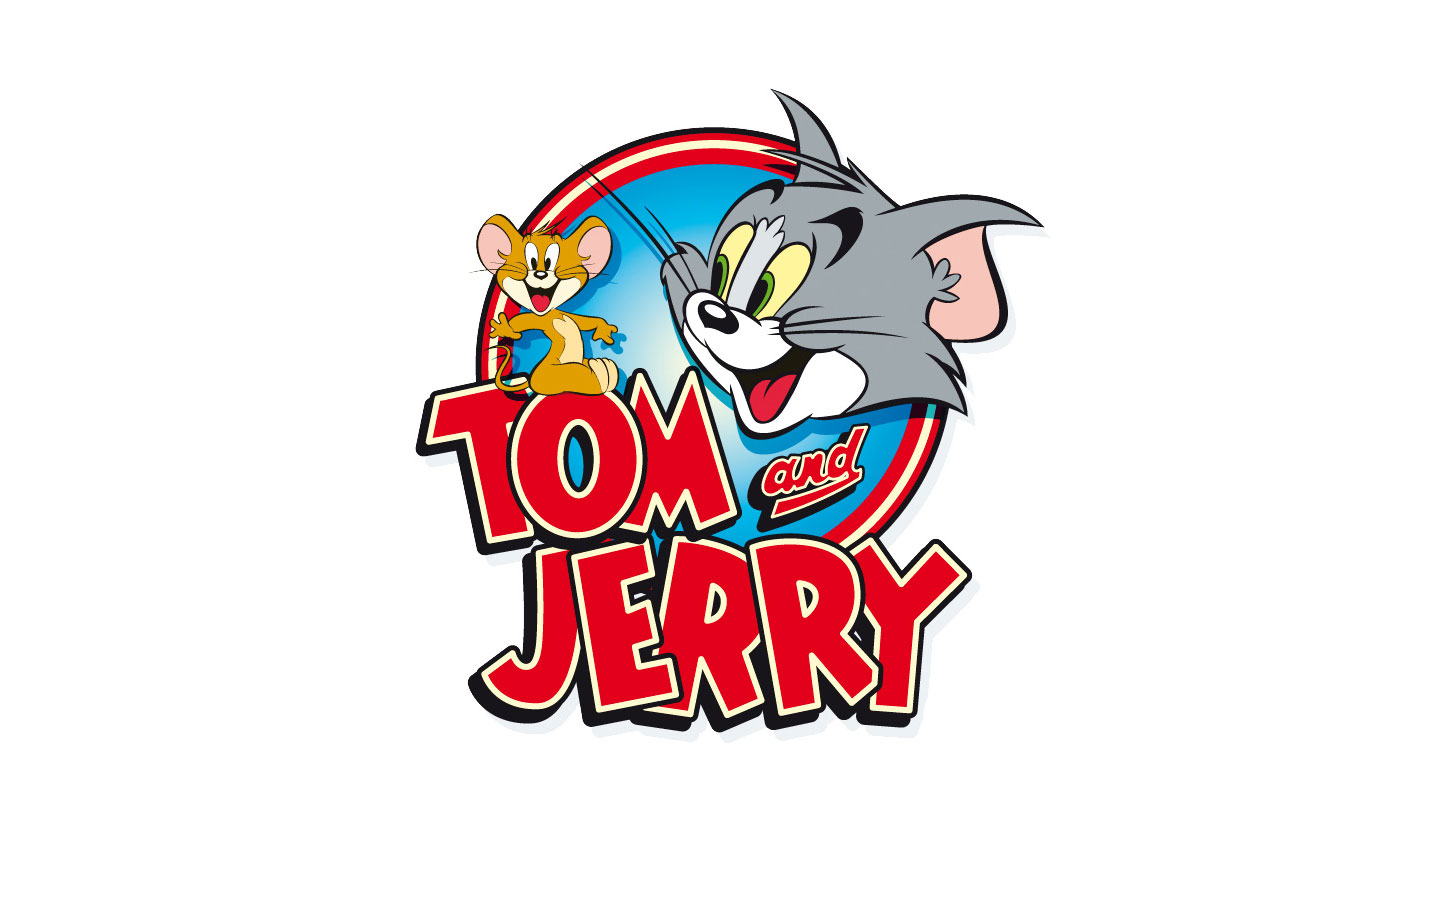 tải hình Tom and Jerry đẹp